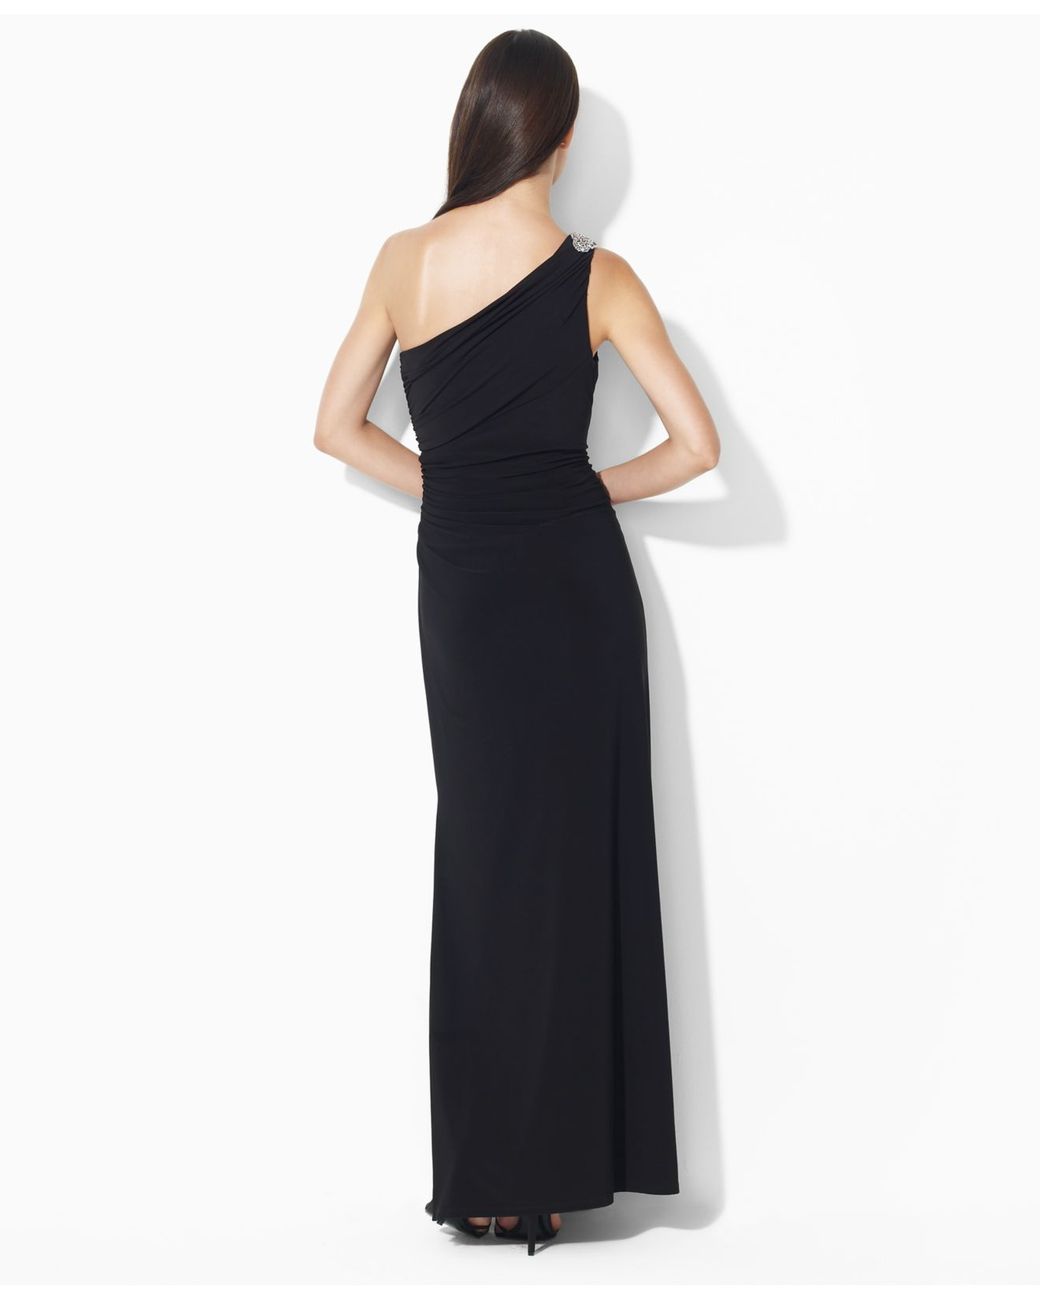 Lauren by Ralph Lauren One-Shoulder Evening Gown in Black | Lyst